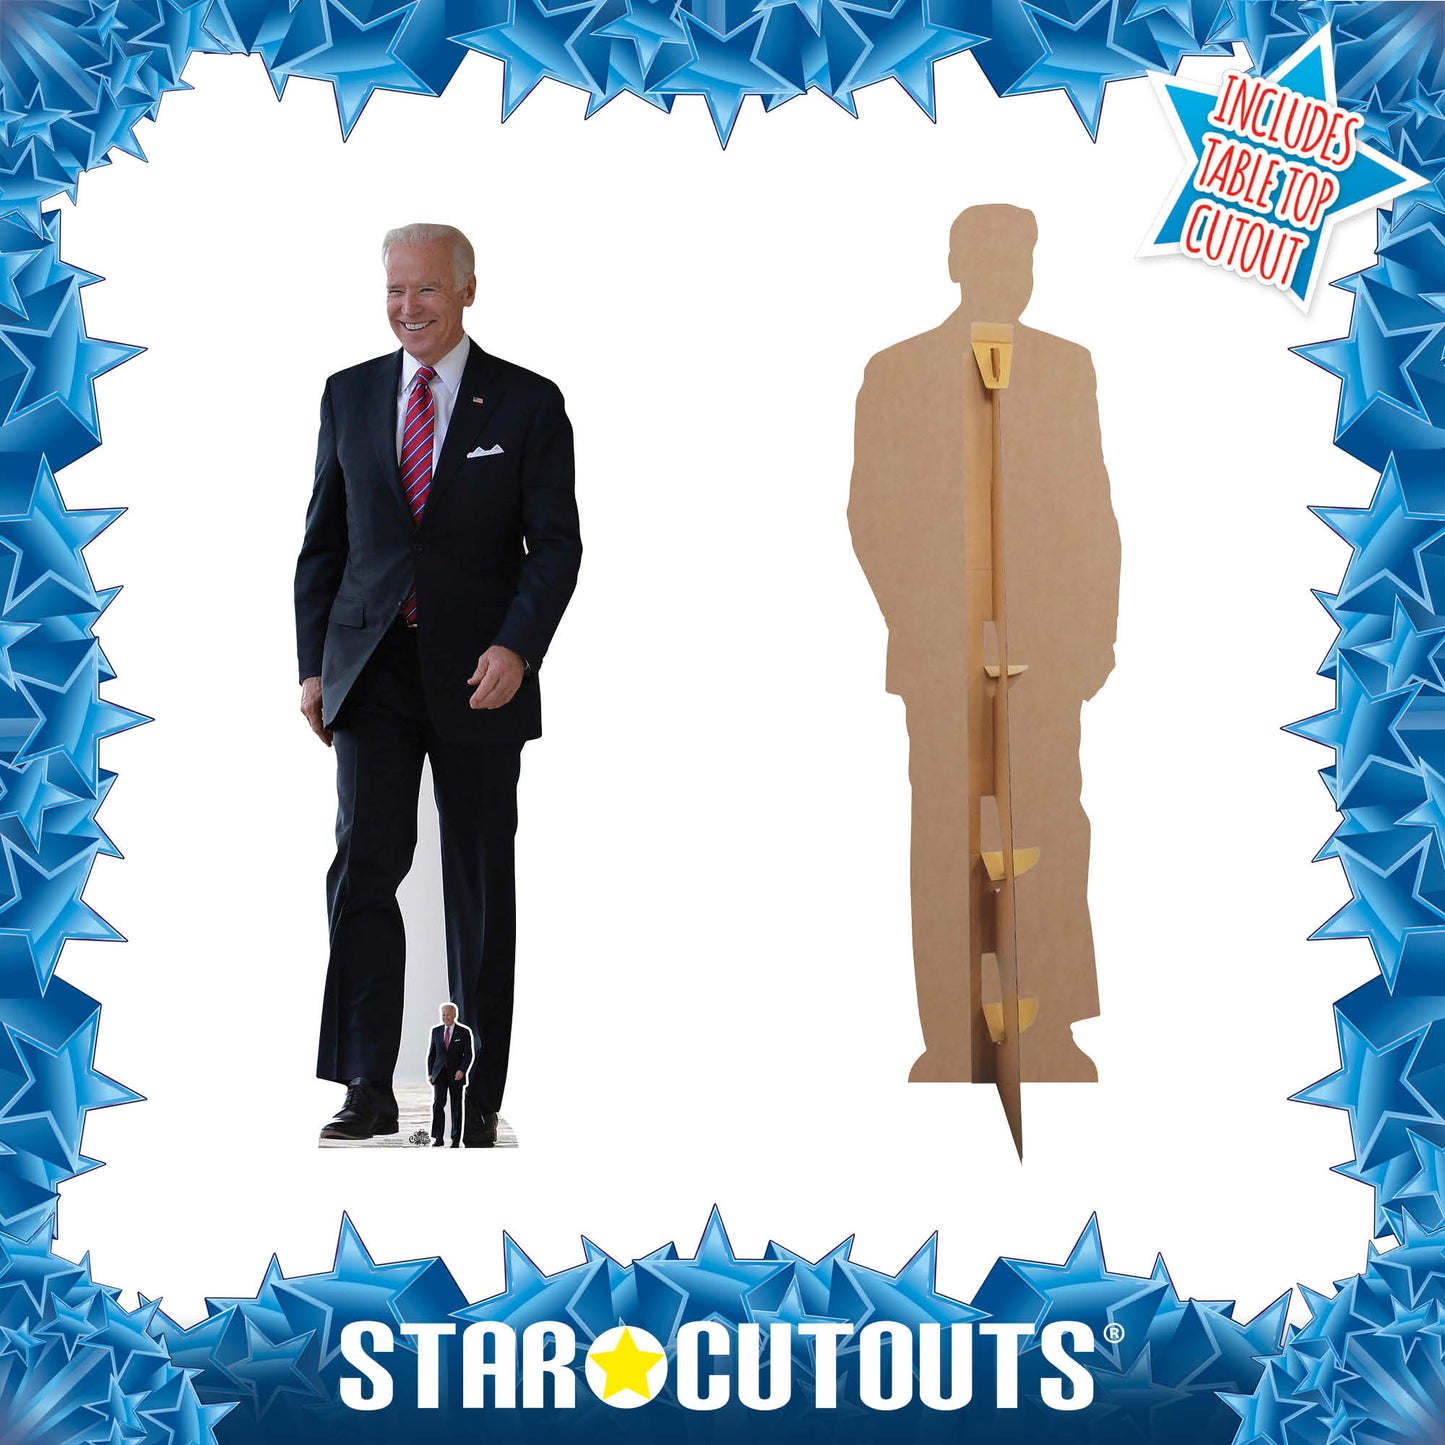 Joe Biden Cardboard Cutout Politician